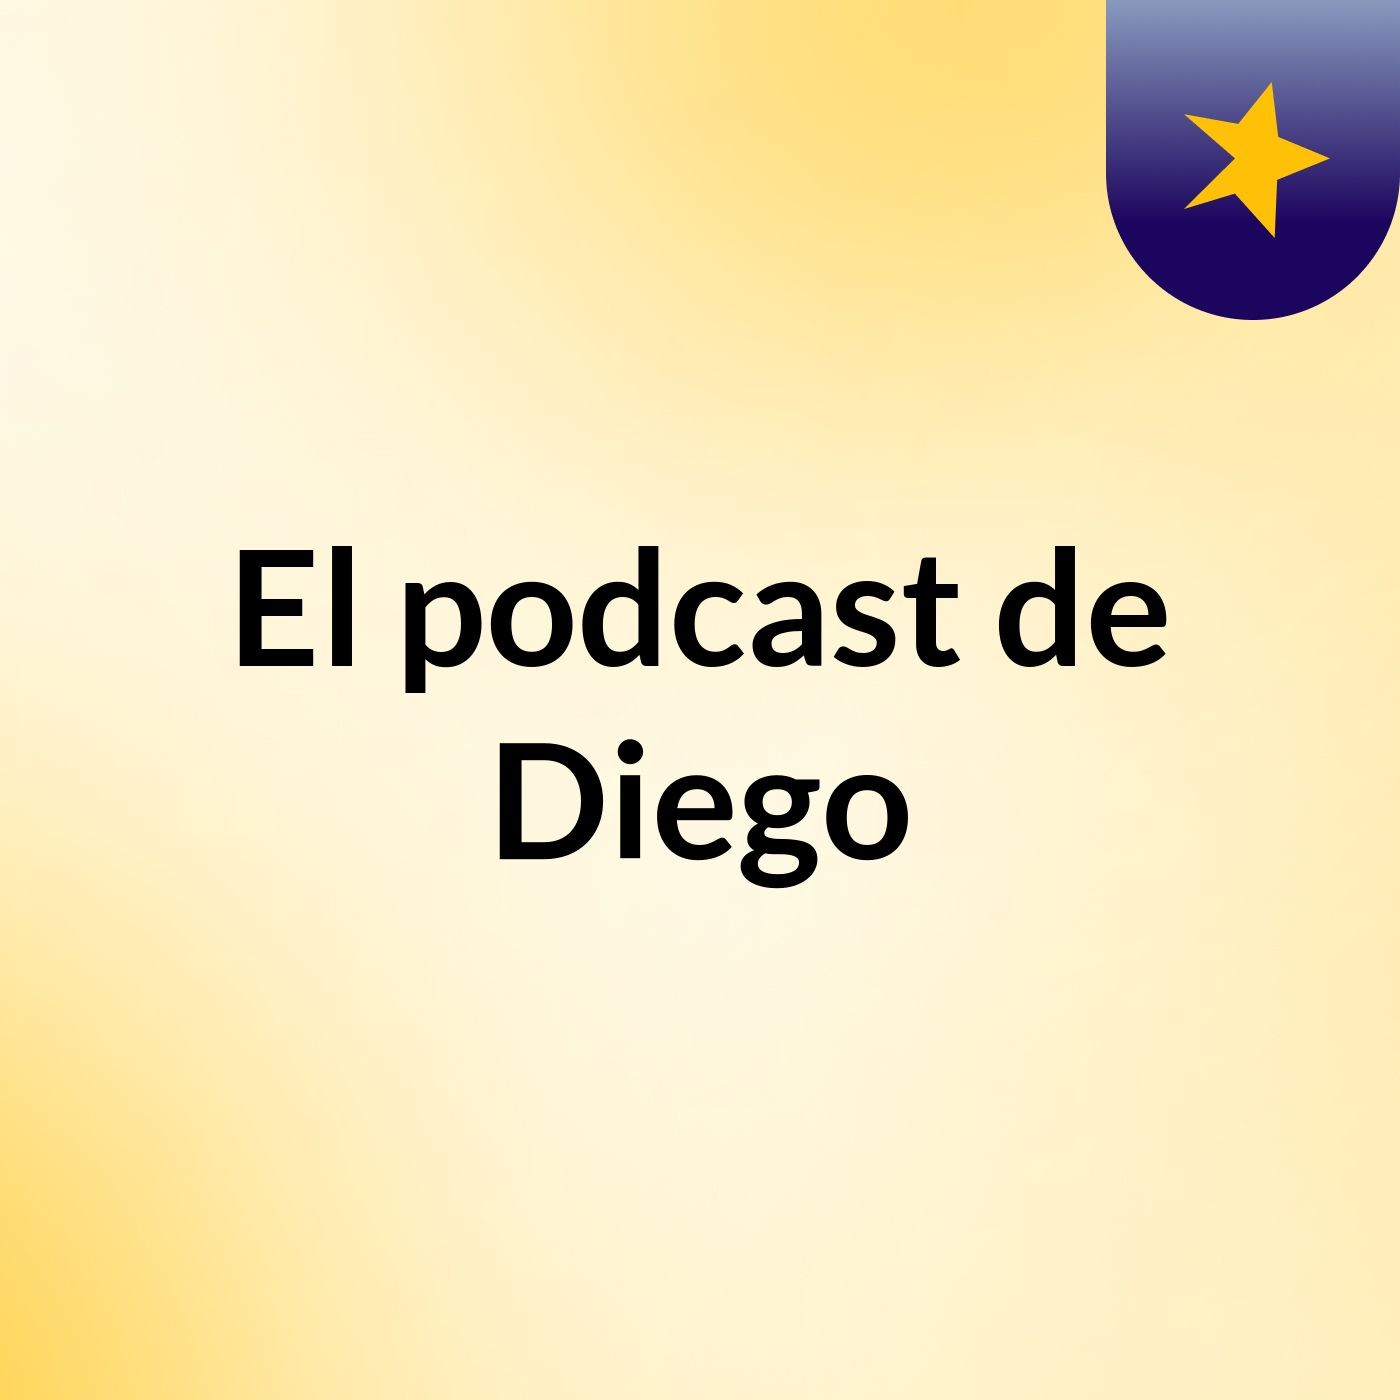 El podcast de Diego